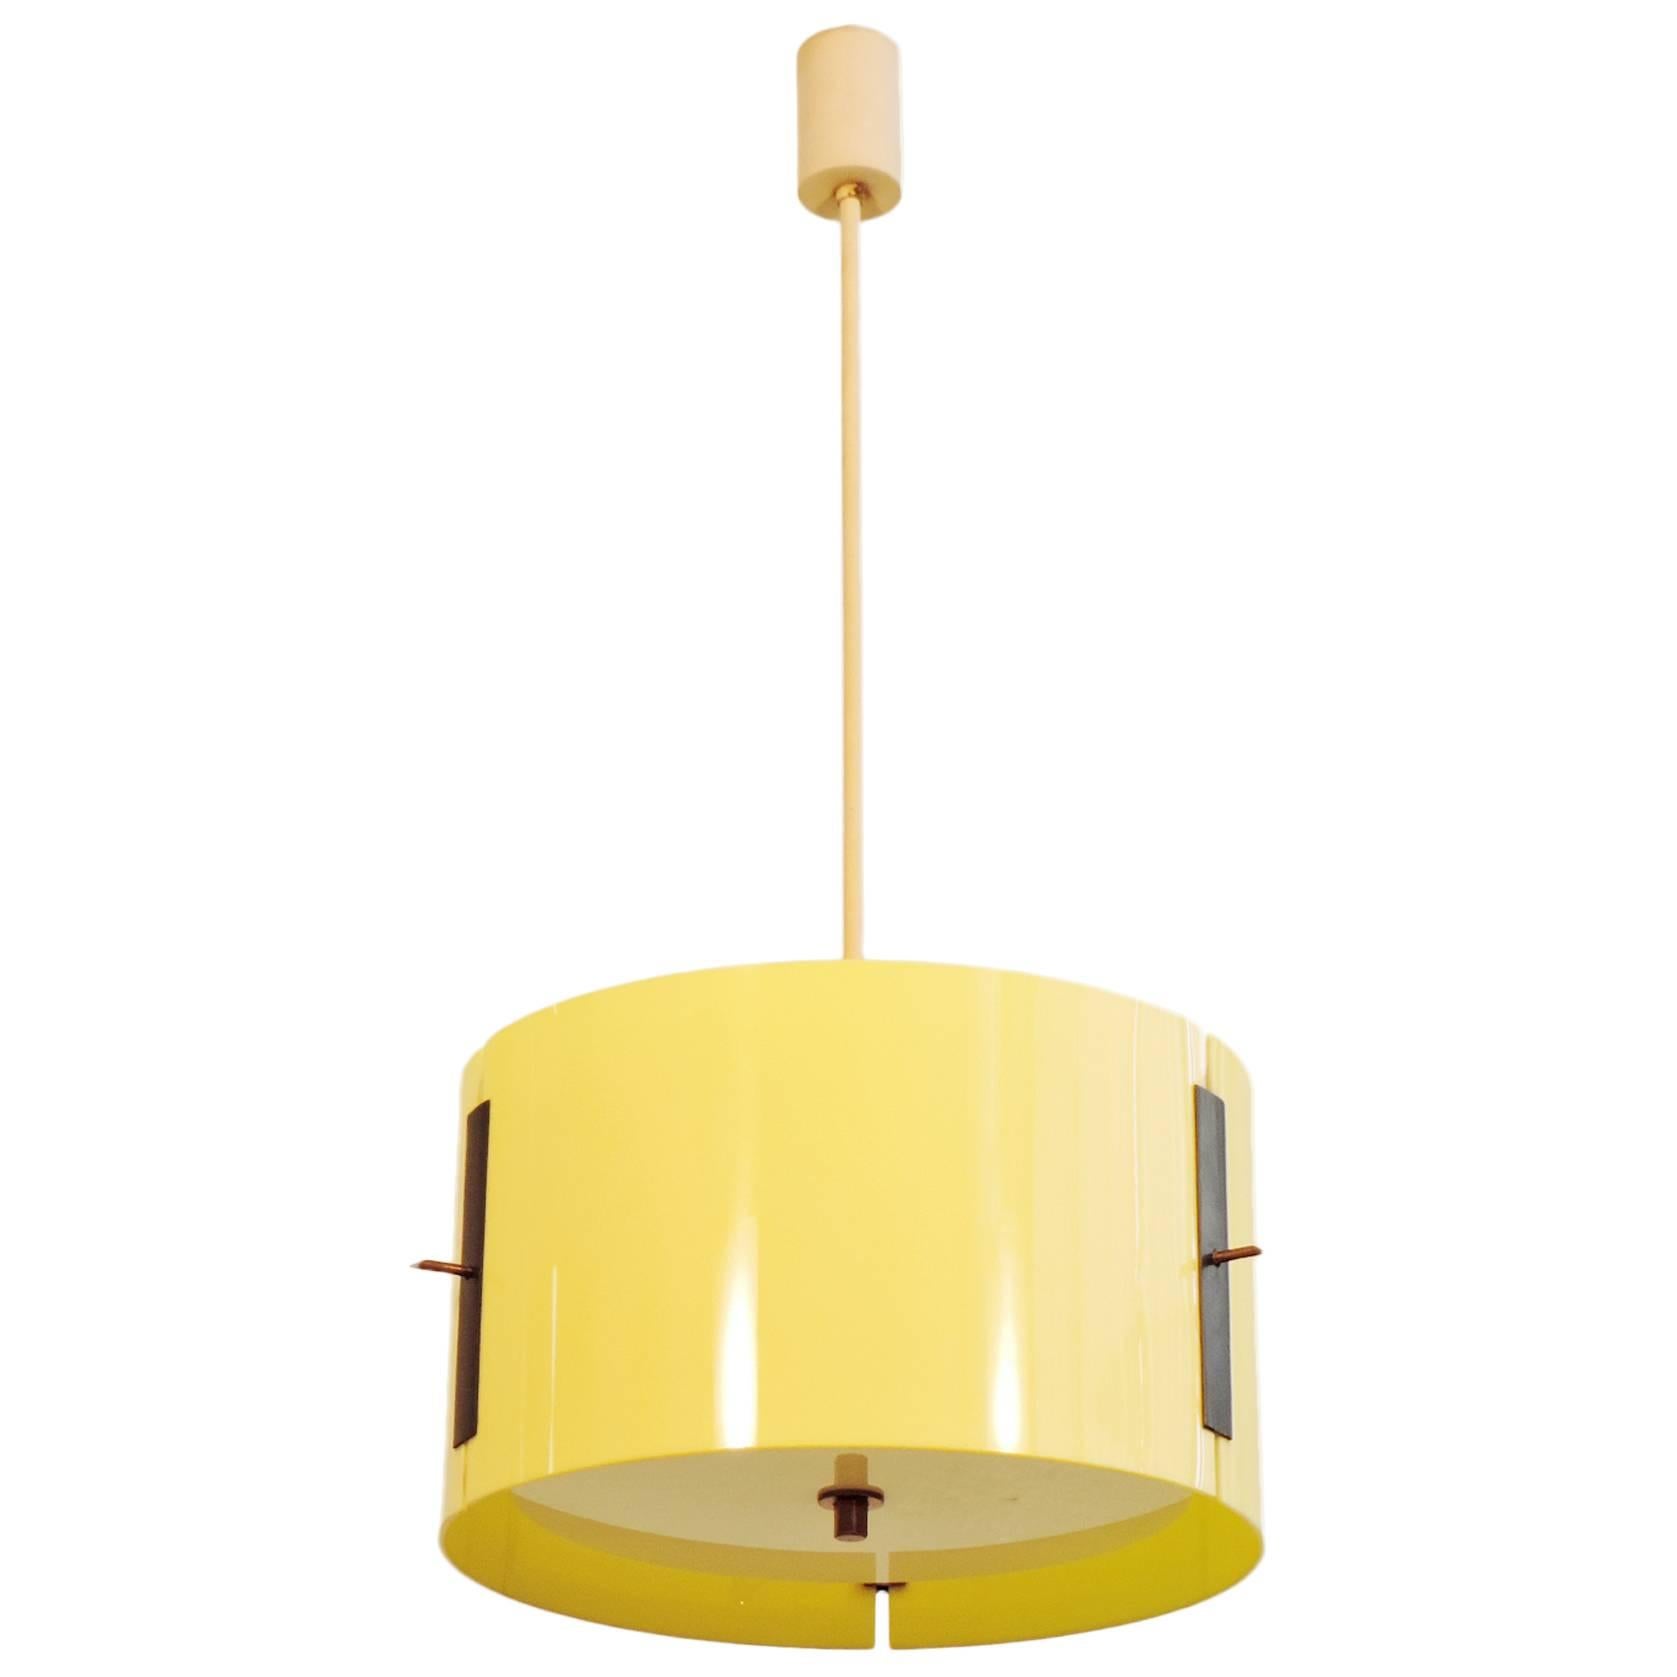 Tito Agnoli Mod. 441 Ceiling Lamp for O-Luce